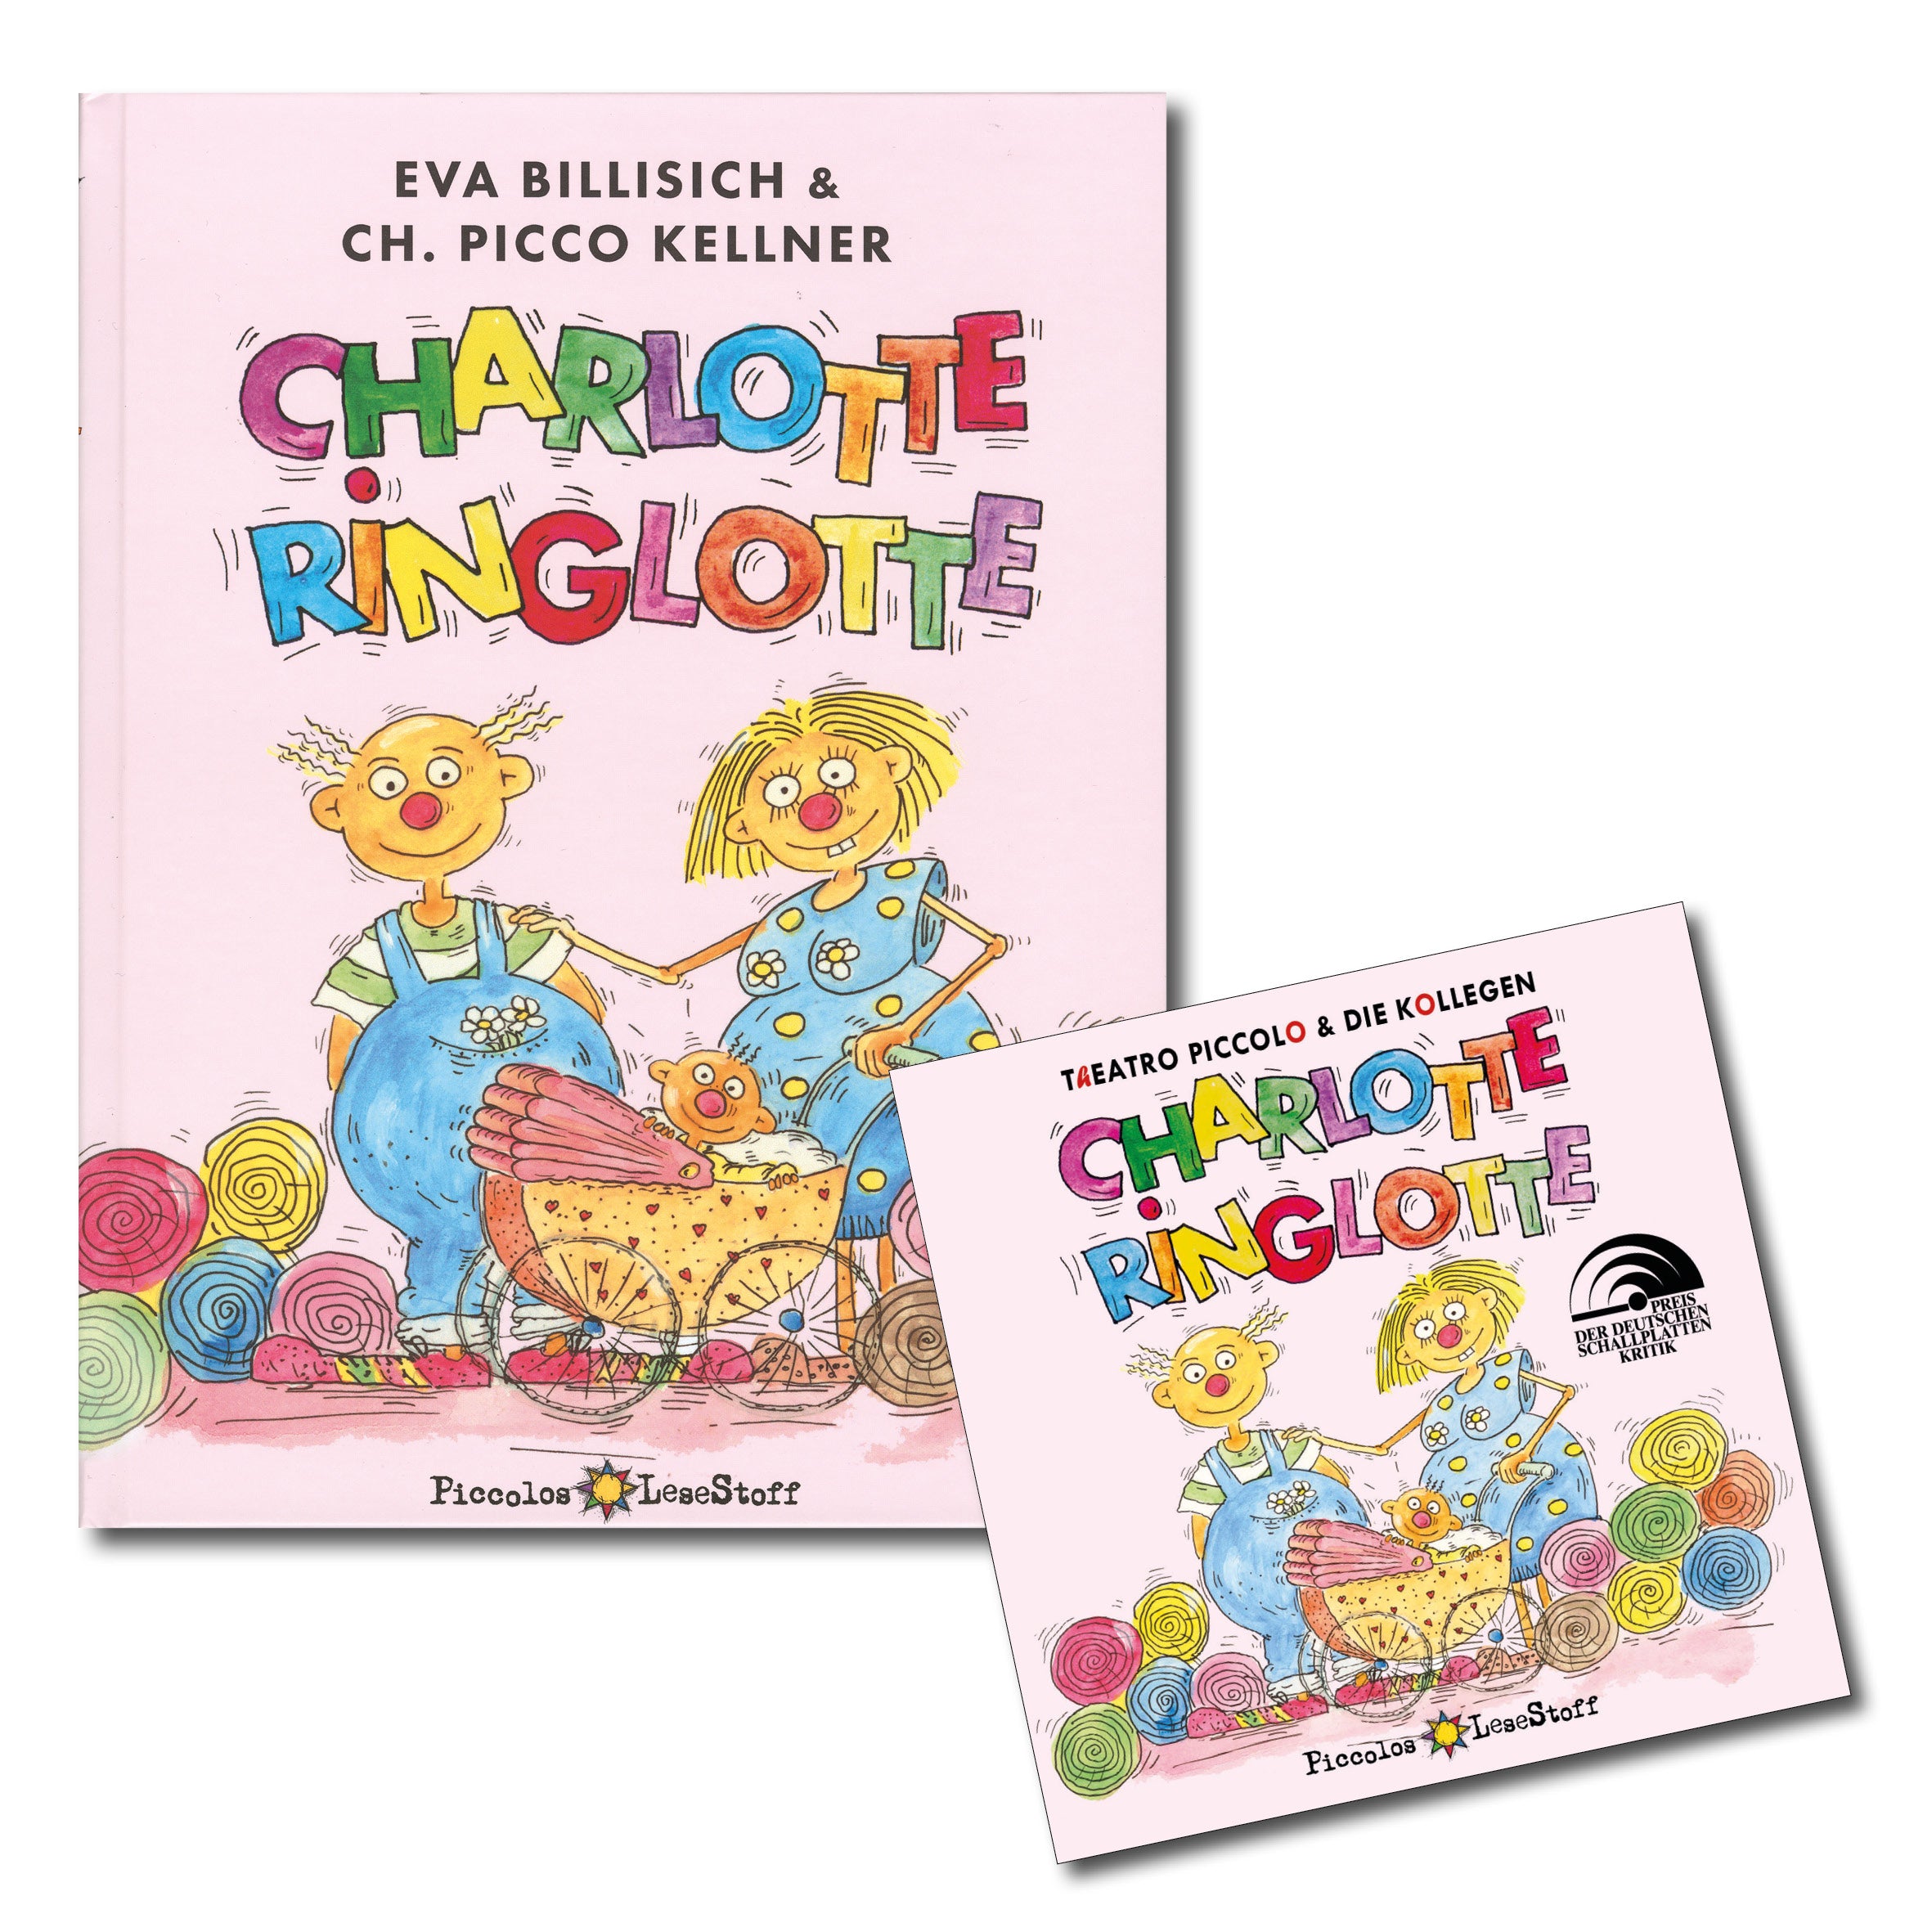 CHARLOTTE RINGLOTTE – Buch & CD als Hörspiel mit Liedern